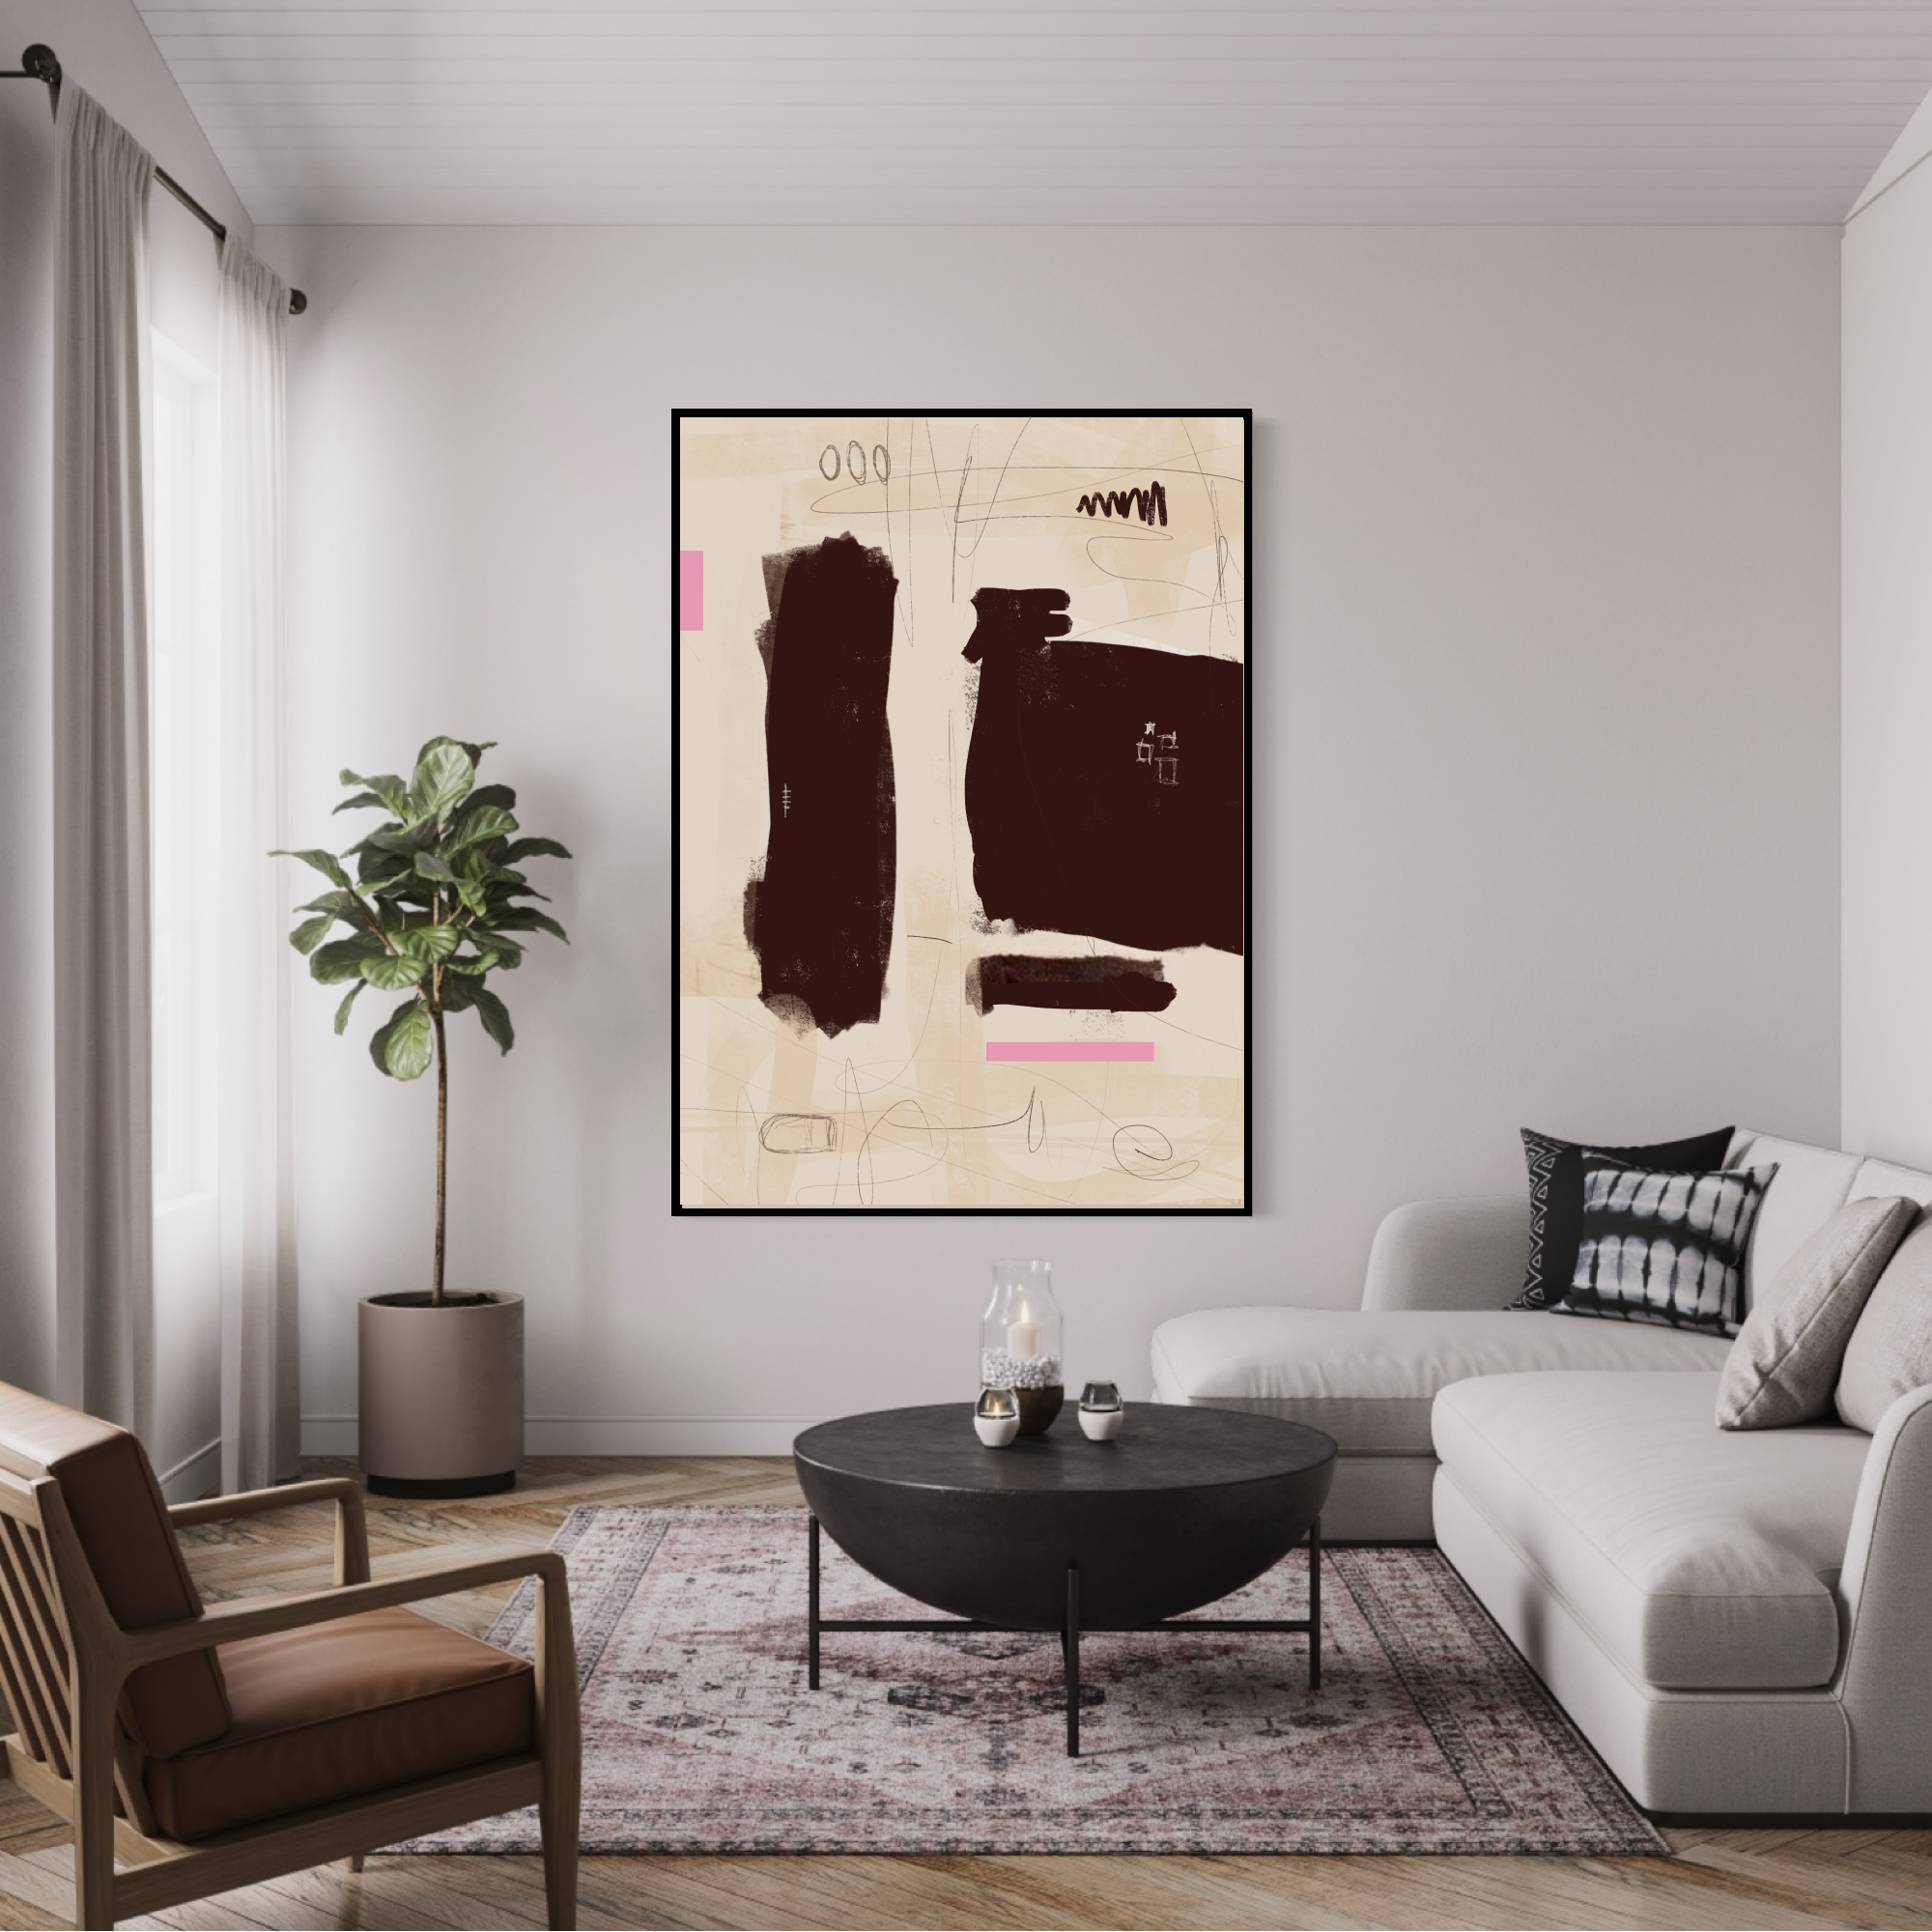 Canvas Print: "Simple Room #1"